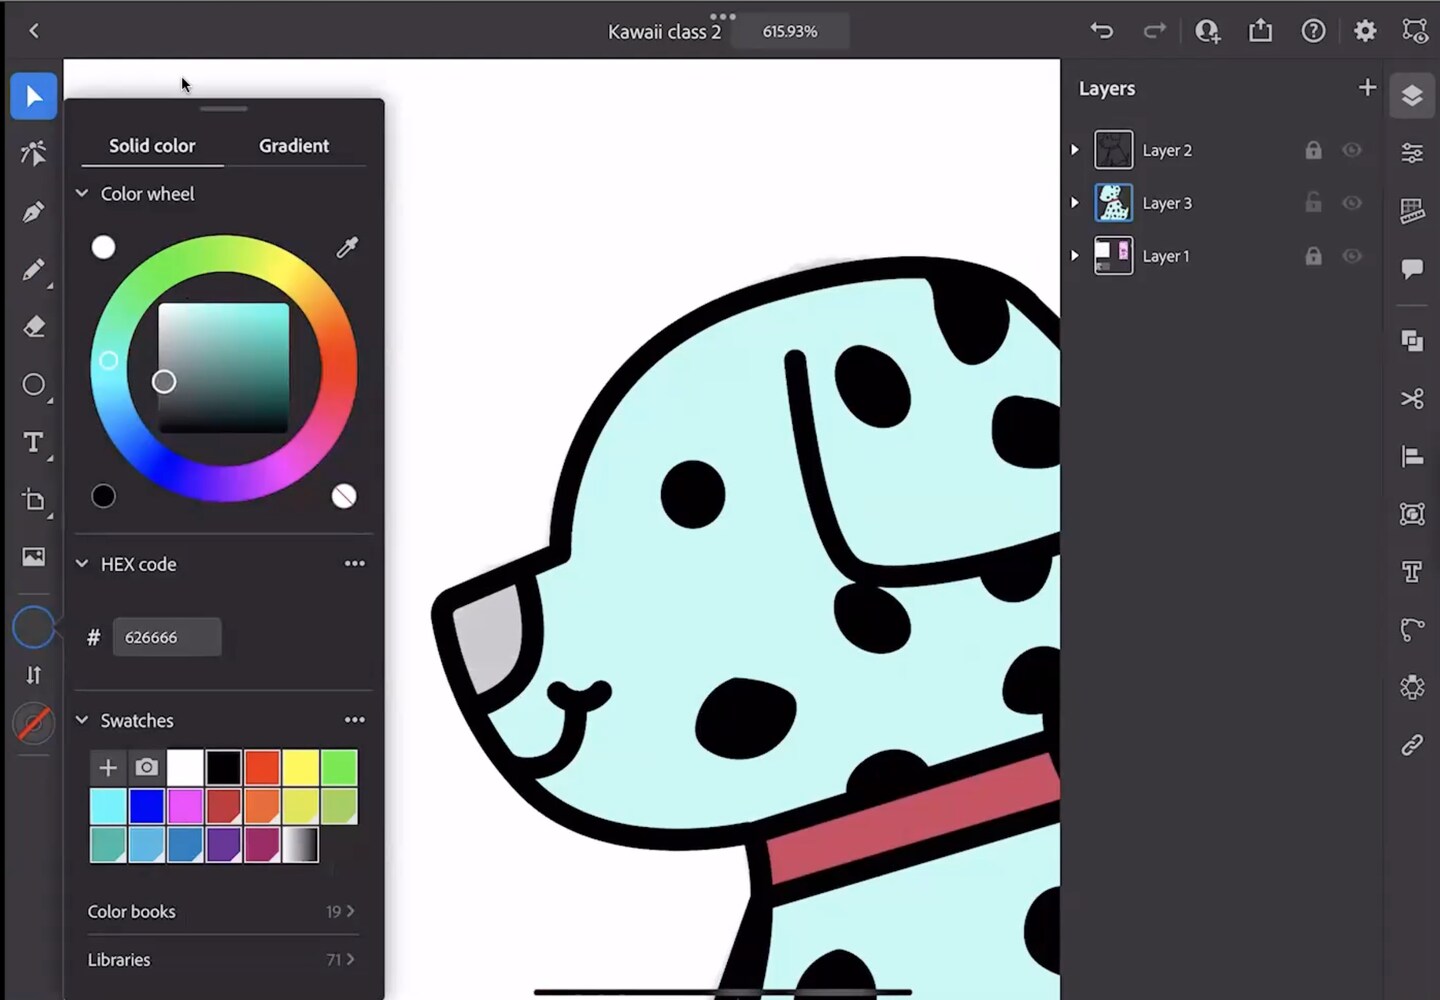 Adobe Illustrator on iPad: Kawaii Characters